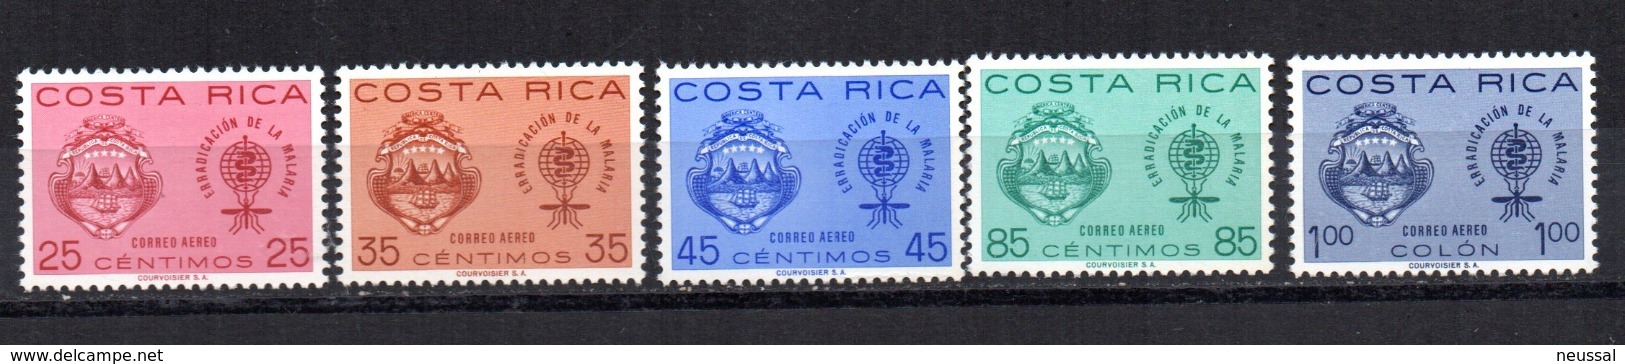 Serie  Nº A-342/6  Costa Rica - Costa Rica